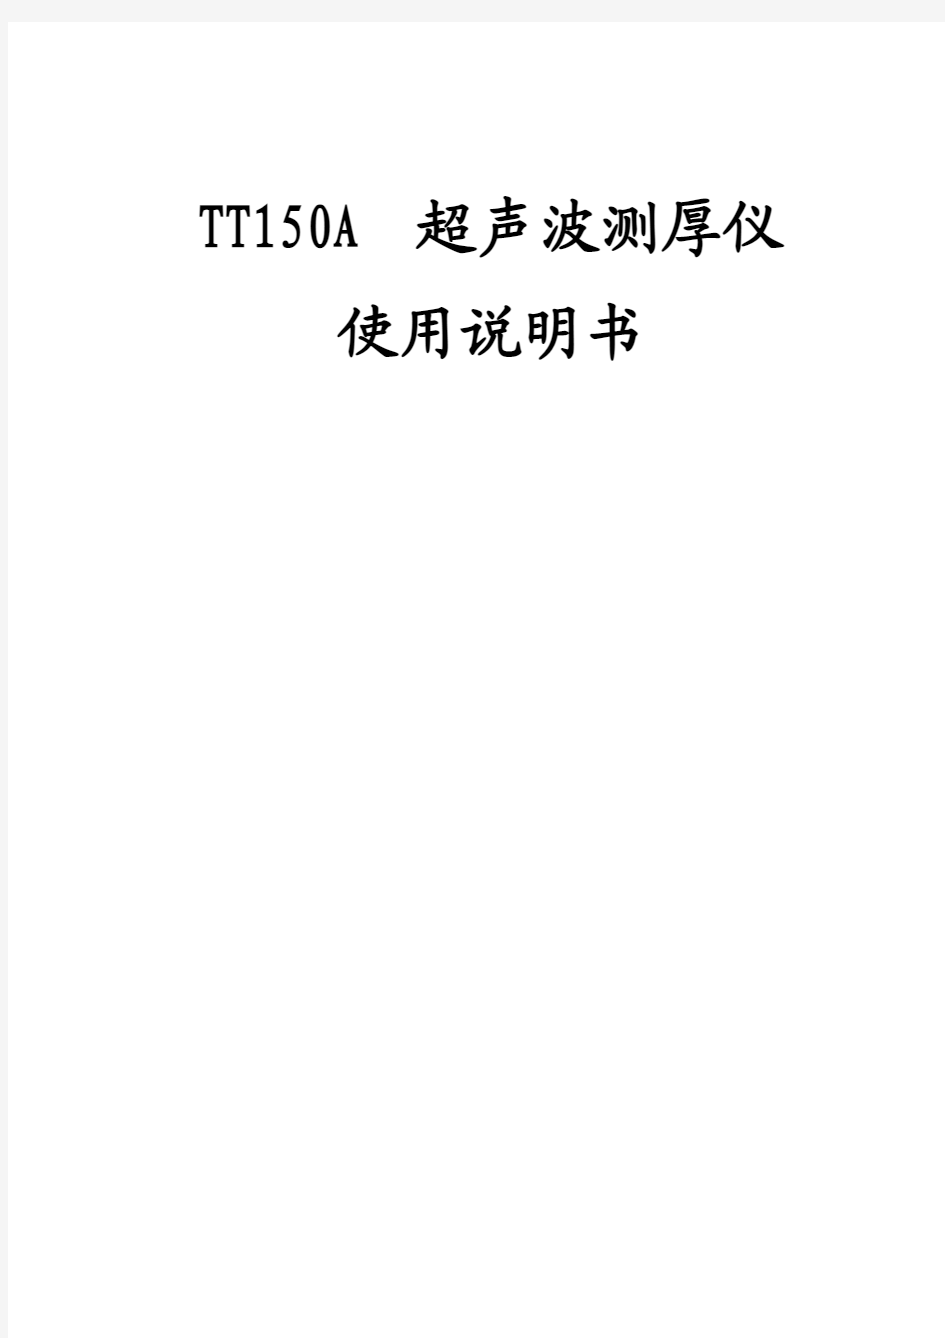 TT150A超声波测厚仪使用说明书_副本